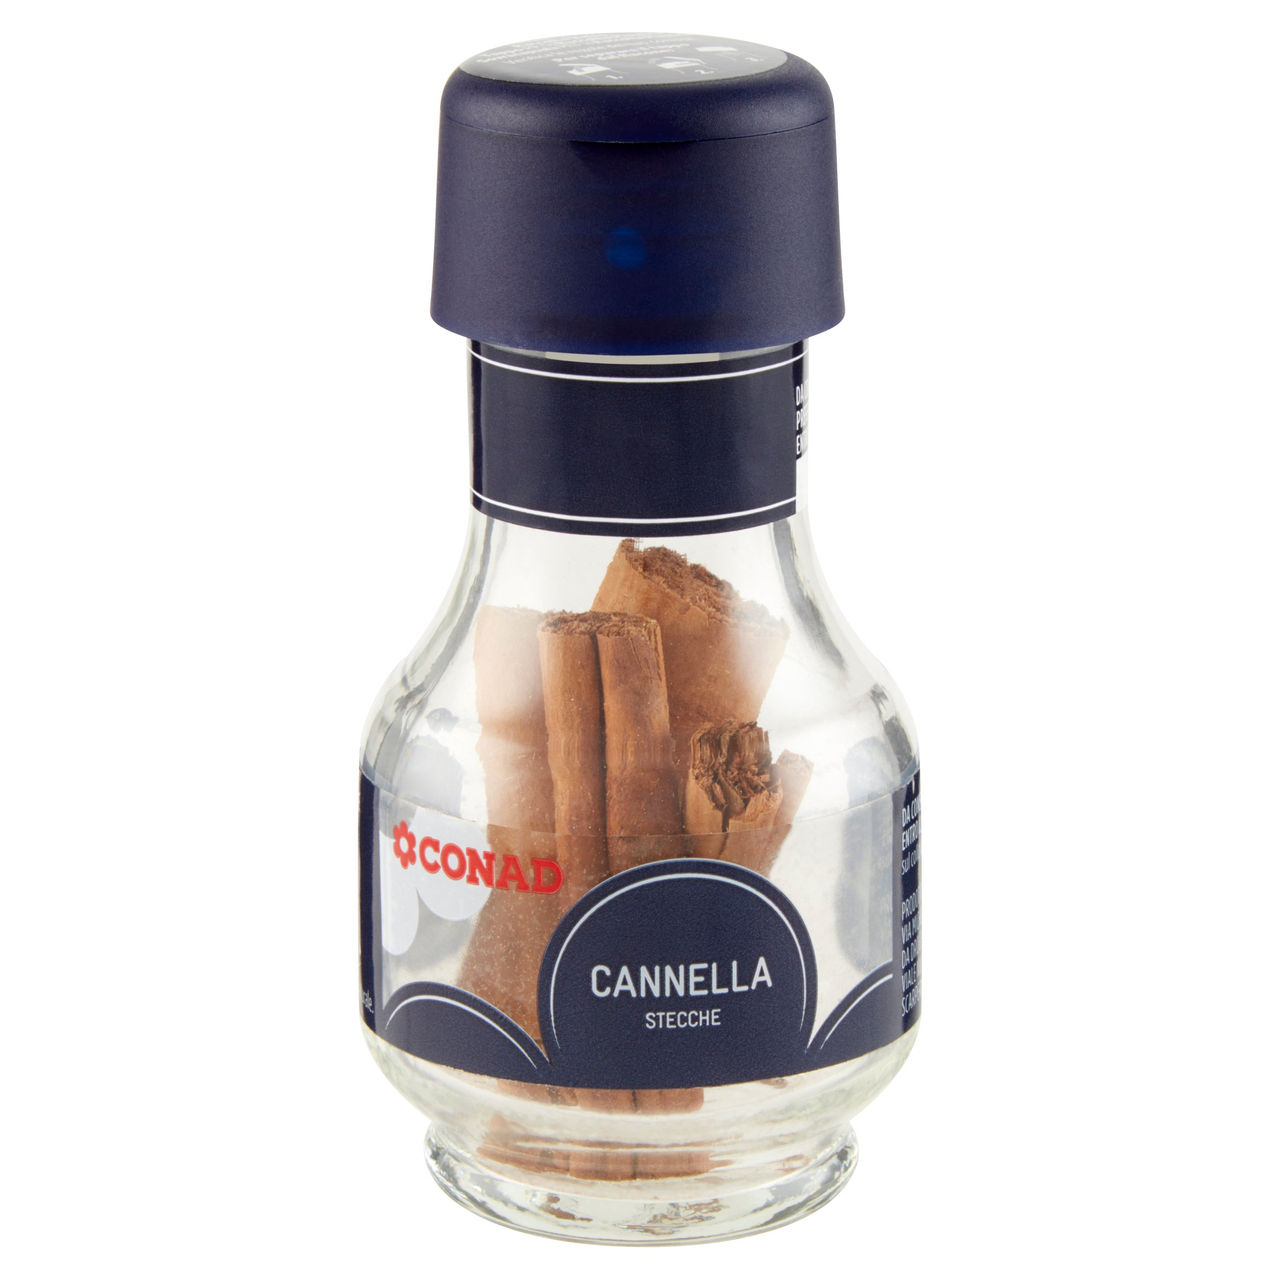 Cannella Stecche 4 pz Conad in vendita online